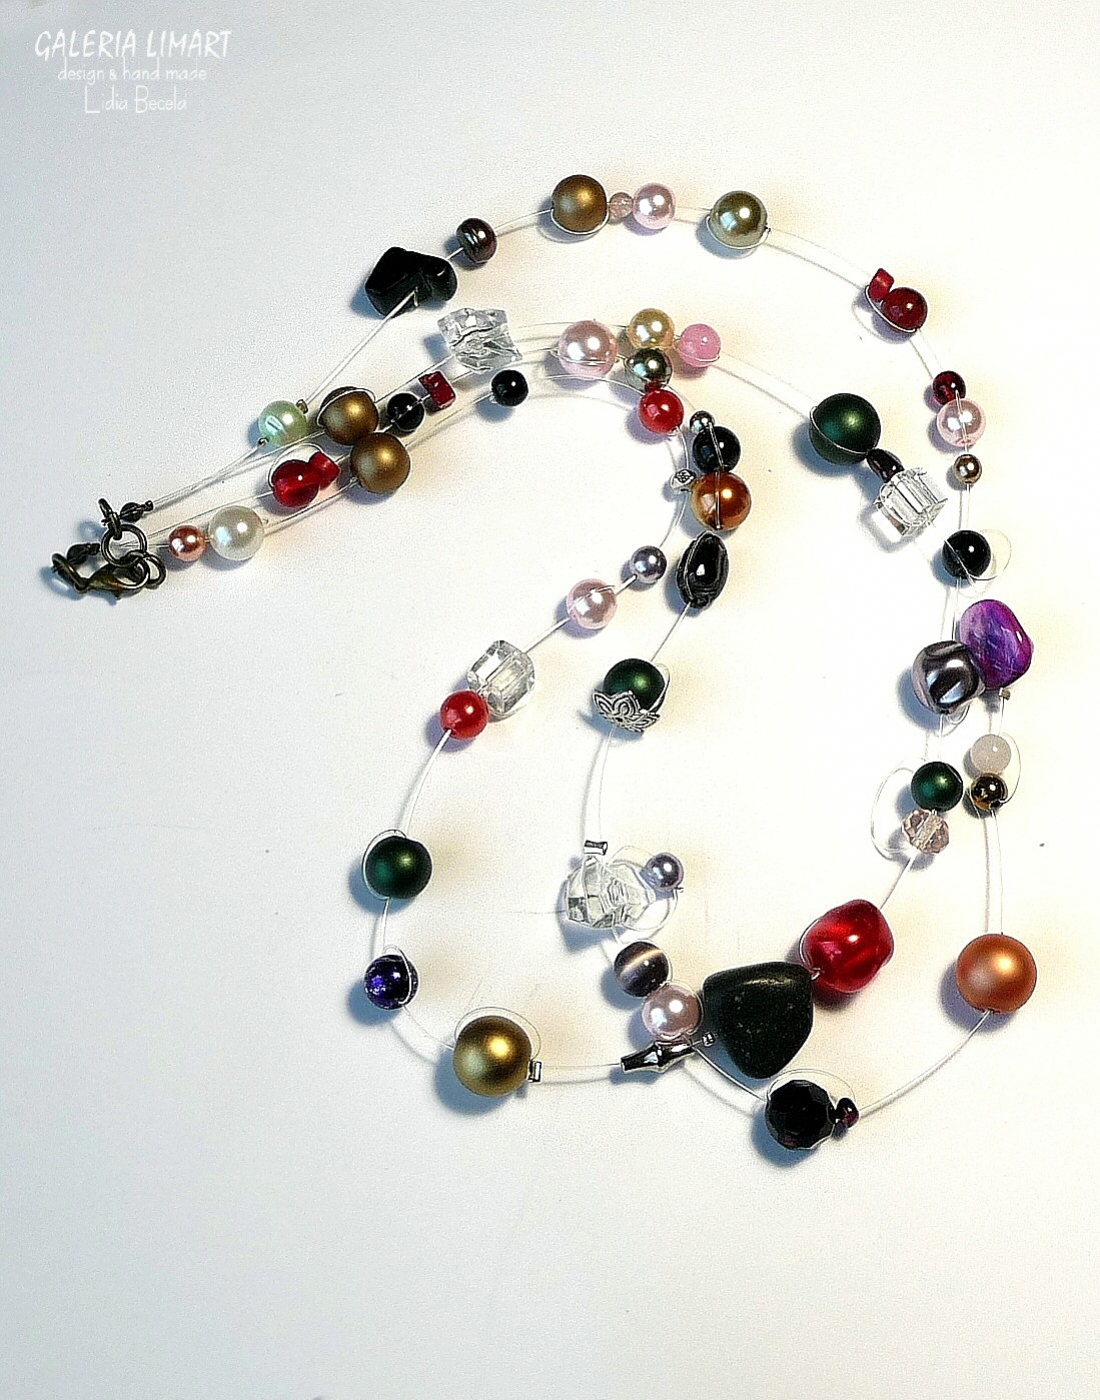 bogata kompozycja kolorowych przeróżnych perełek zarówno naturalnych jak i szklanych przemieszanych z kryształkami, szkłem weneckim, minerałami w ciekawej i niebanalnej palecie barw